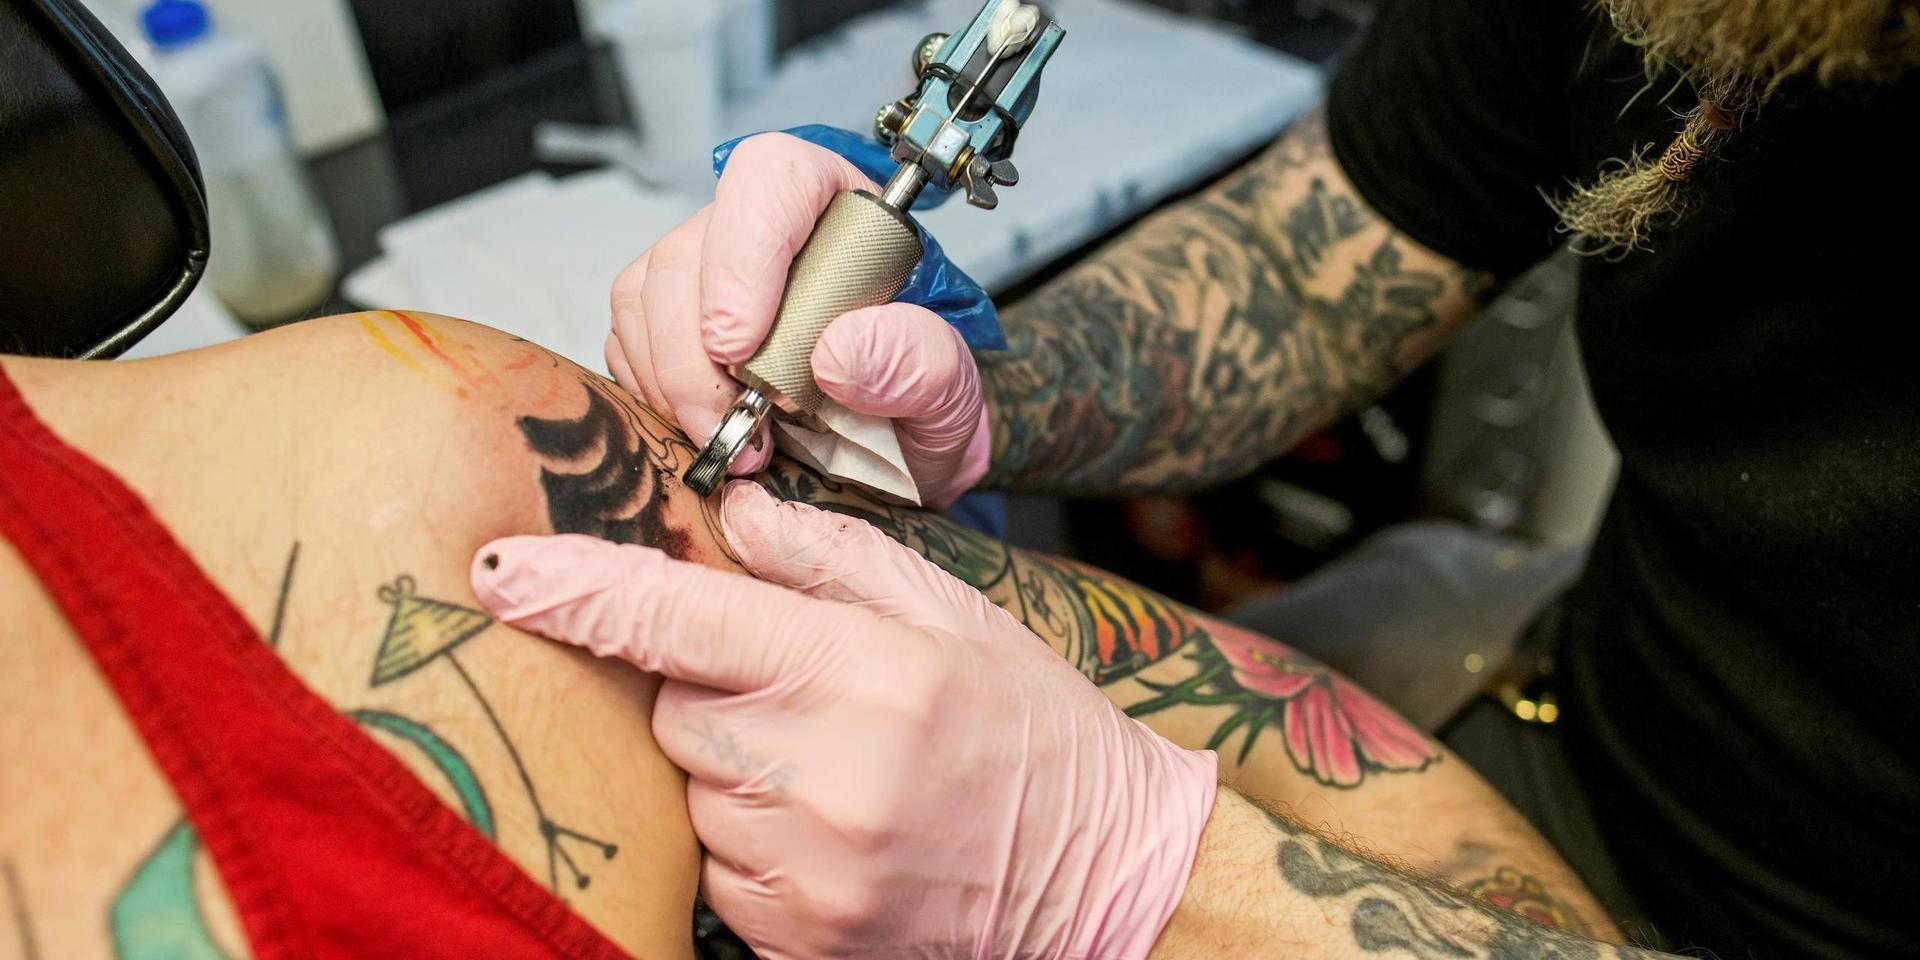 Läsåret 2021/2022 tillkommer fler lärlingsutbildningar på gymnasieskolan. Ett alternativ är tatuerare som erbjuds inom ramen för inriktningen Övriga hantverk.